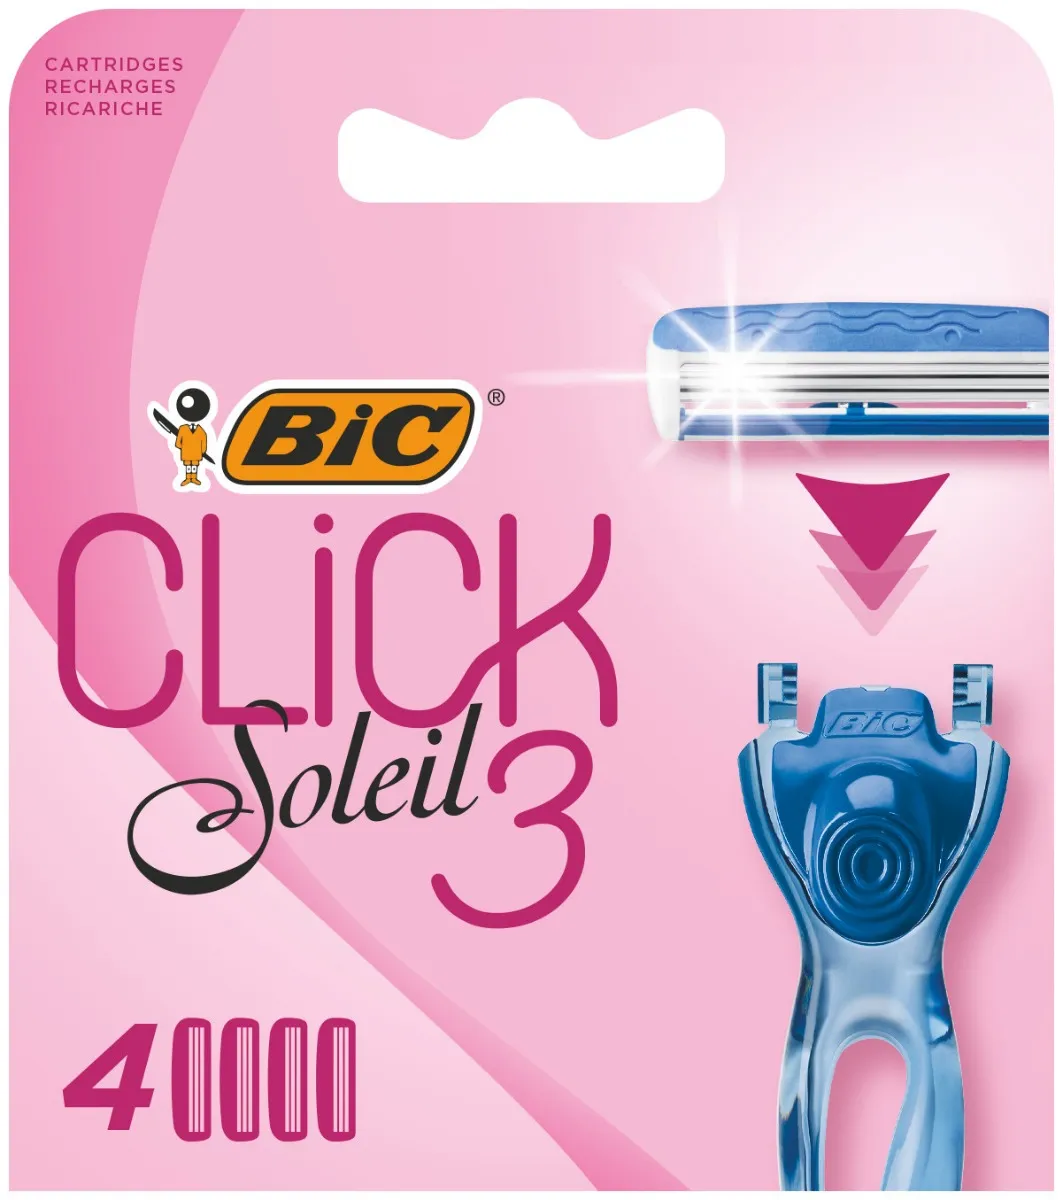 BiC Soleil Click 3 Wkłady do maszynki do golenia dla kobiet, 4 szt.